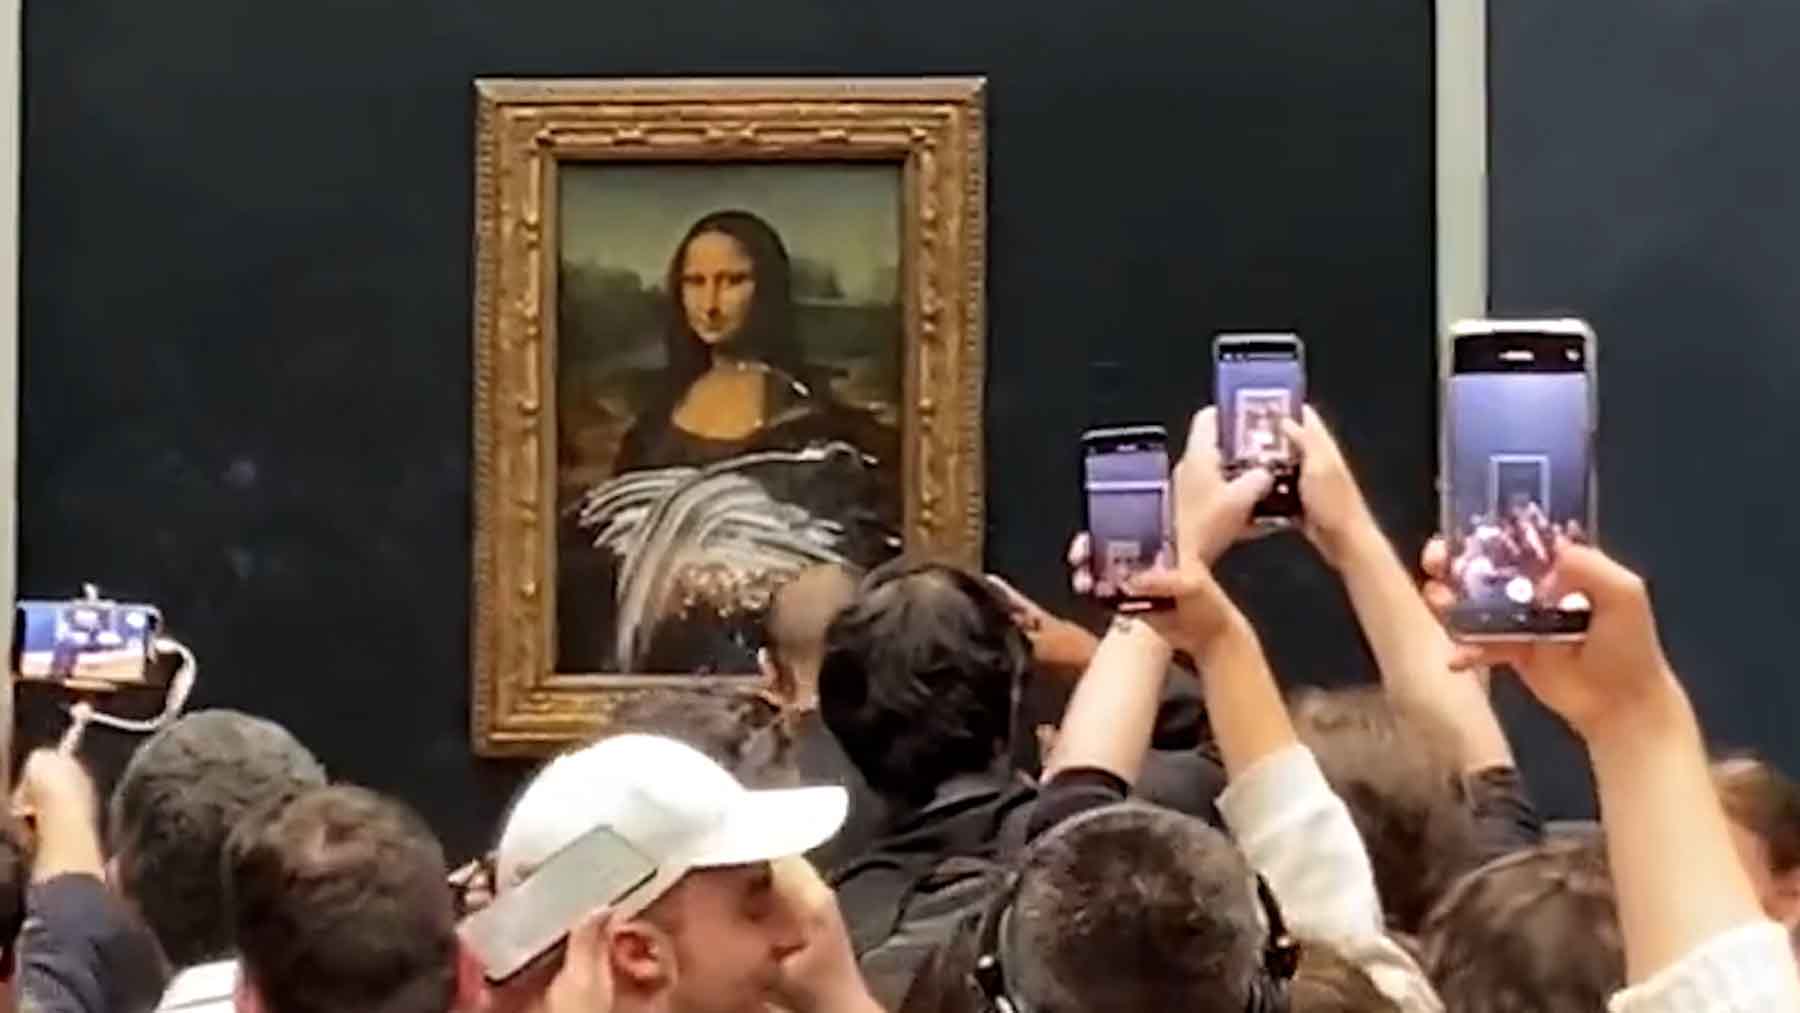 Un visitante del Louvre lanza un tartazo contra el cuadro de la Mona Lisa